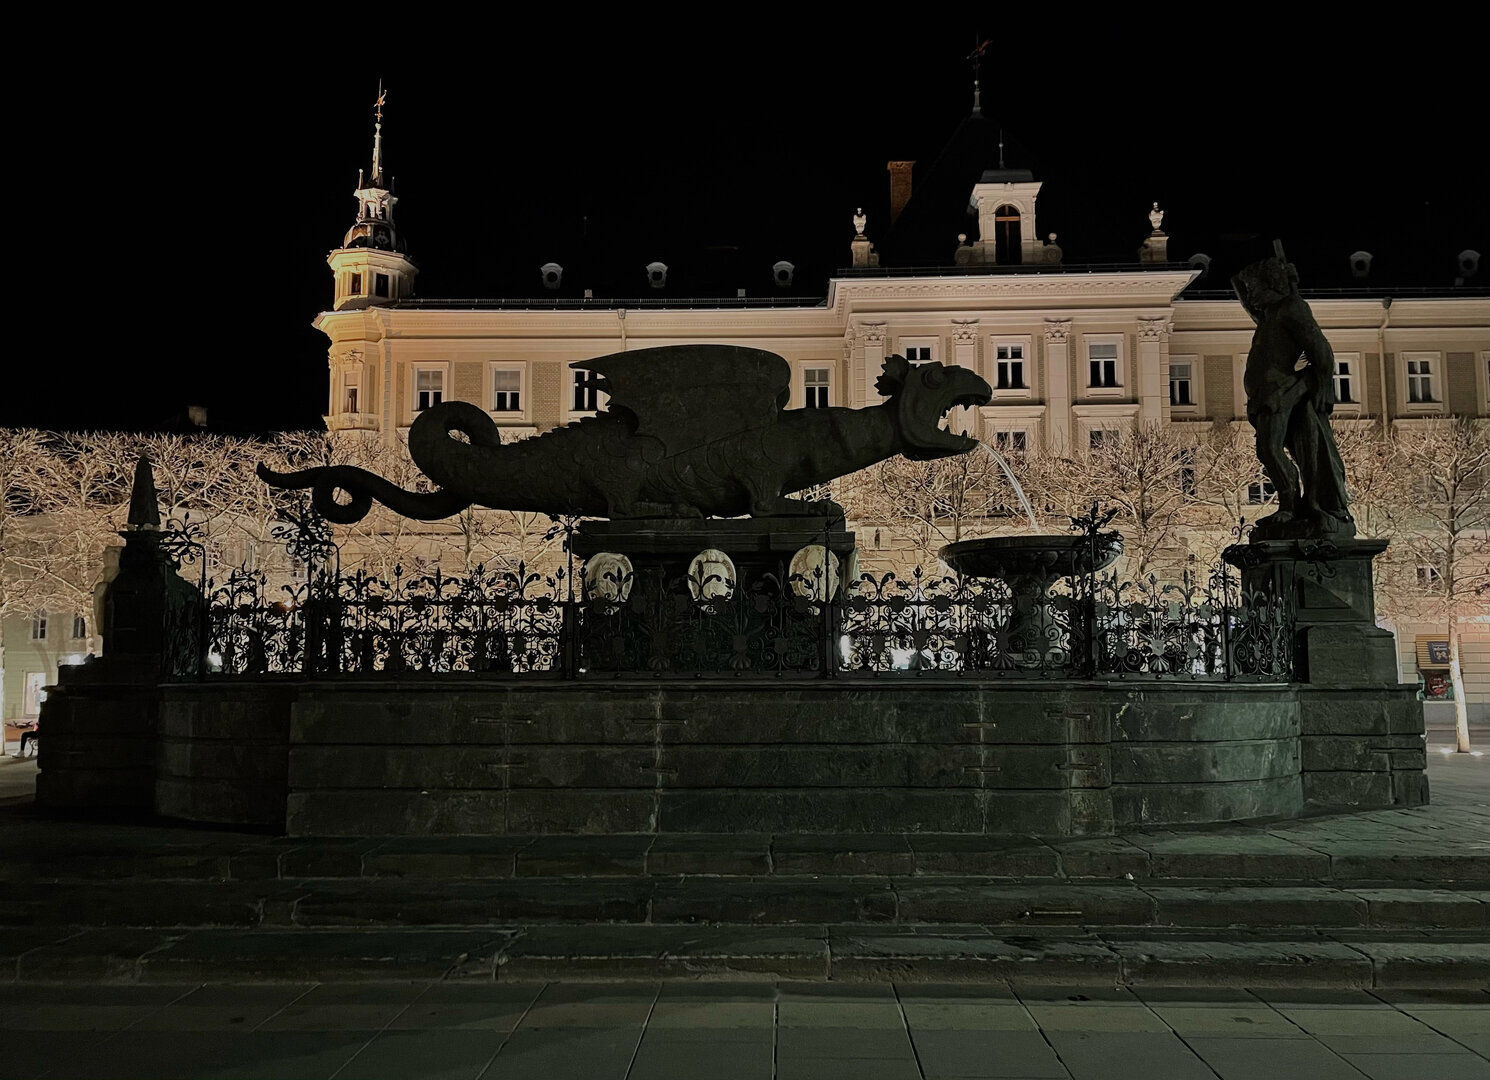 Im Zuge der Earth Hour wird das Licht beim Lindwurm ausgeschalten. Foto: StadtKommunikation/Krainz